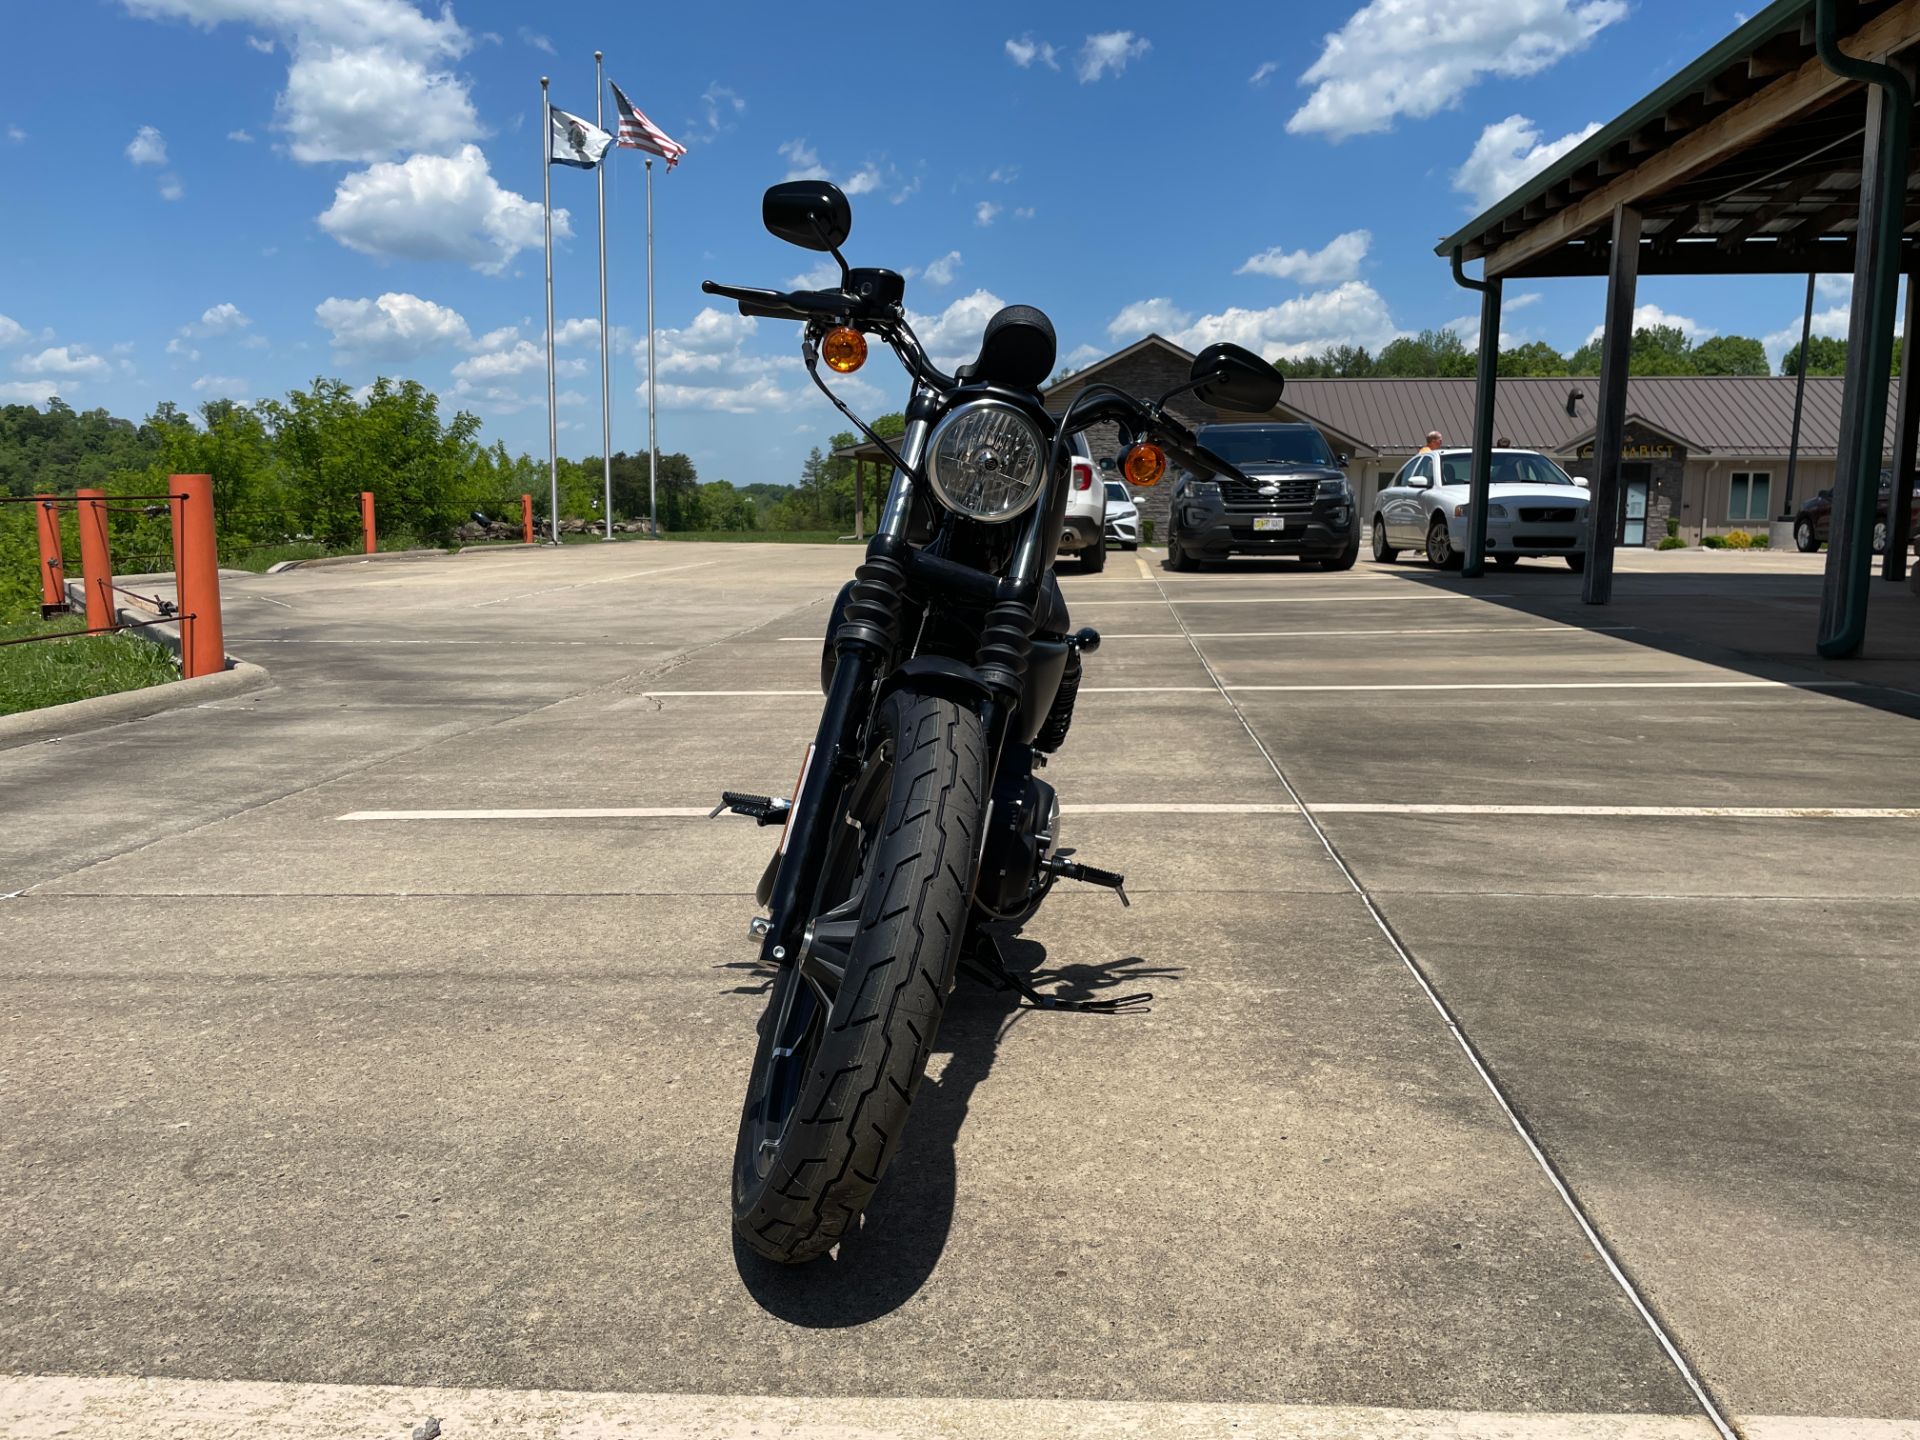 2022 Harley-Davidson Iron 883™ in Williamstown, West Virginia - Photo 3